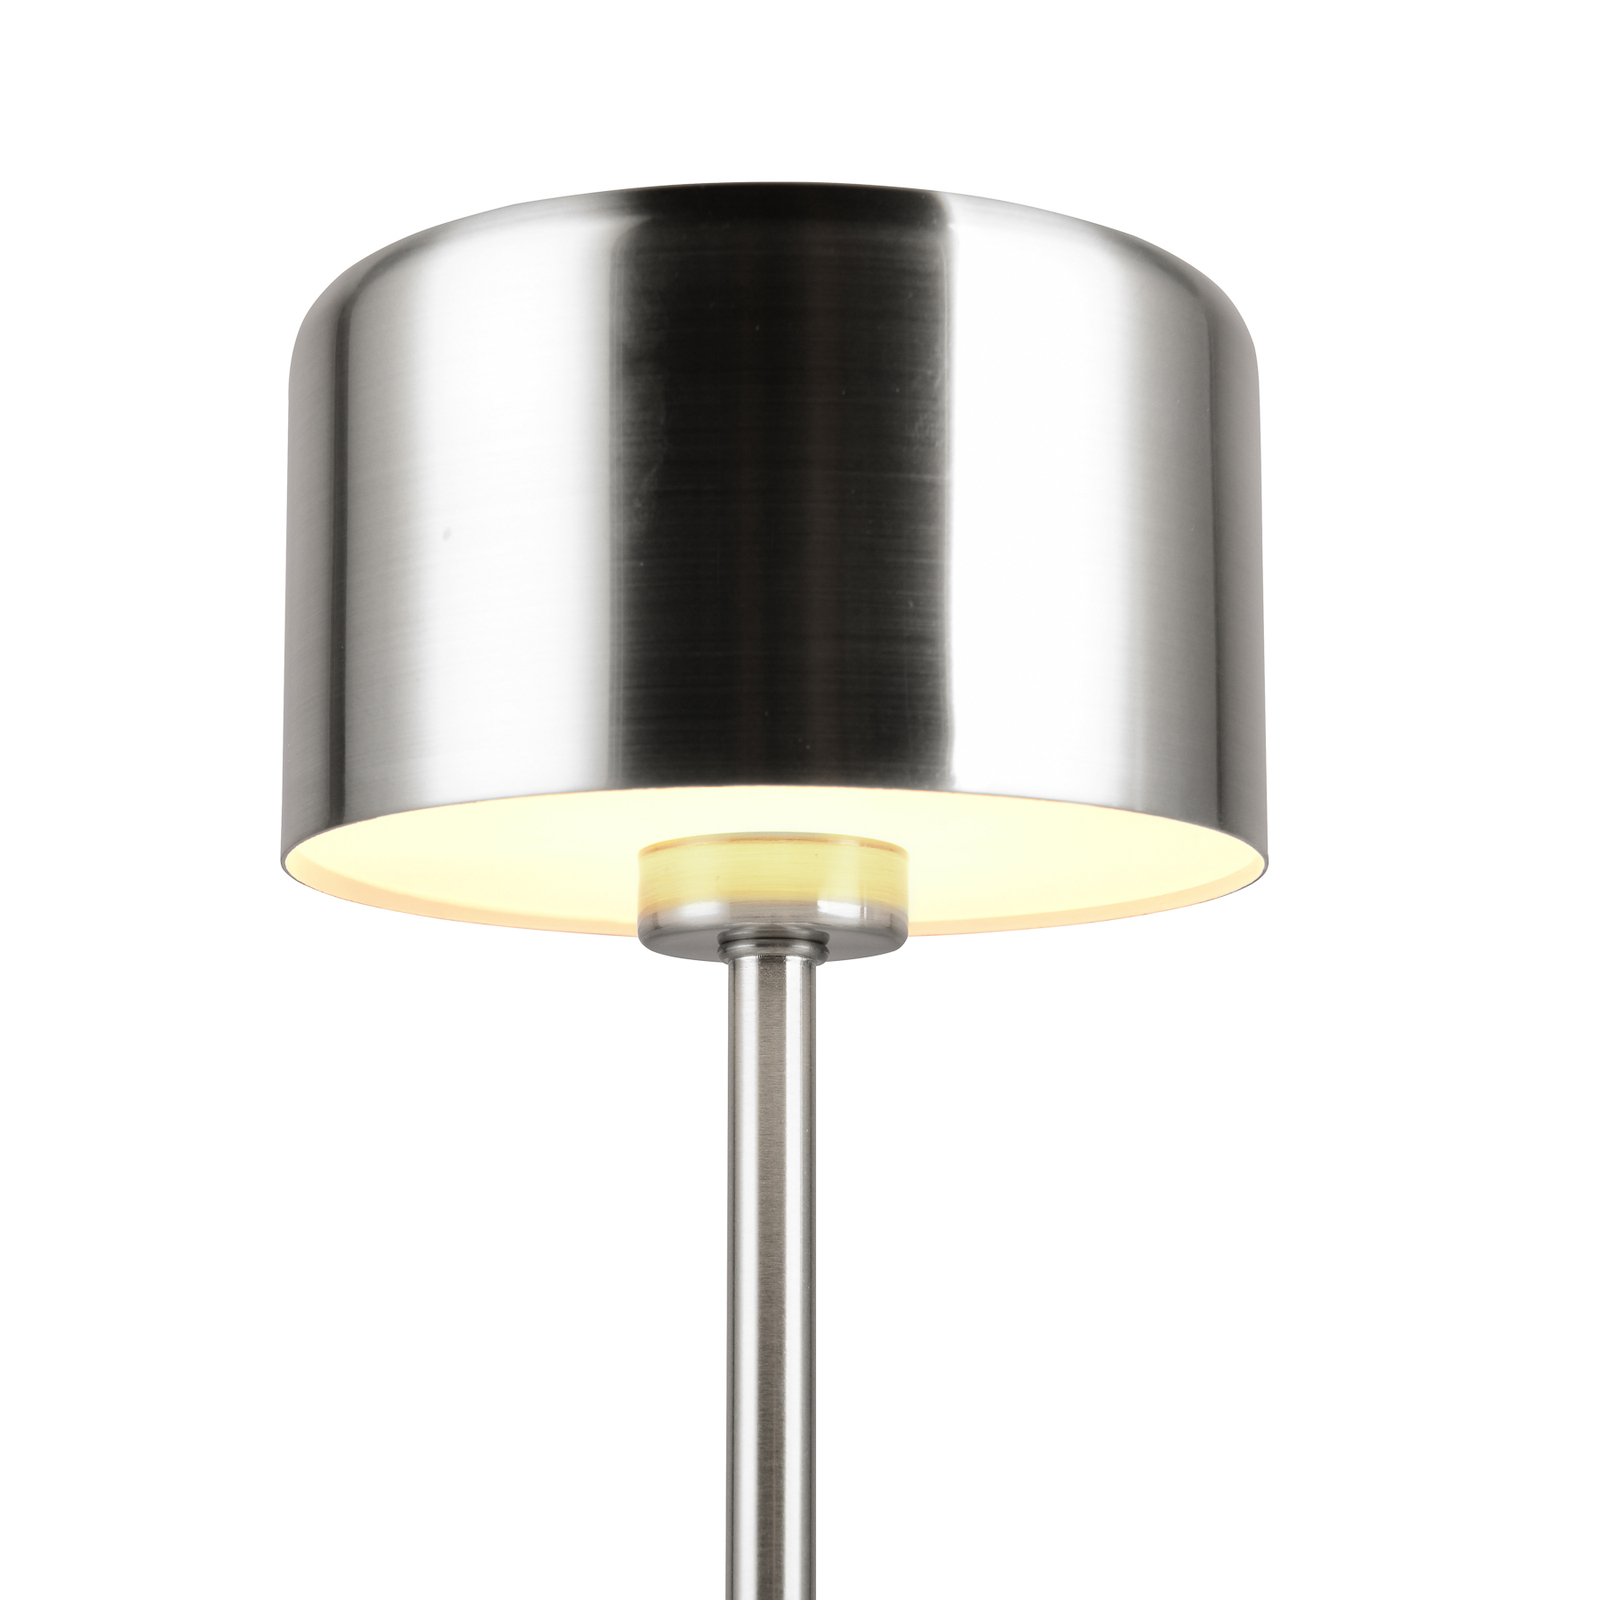 Lampe de table LED rechargeable Jeff, couleur nickel, hauteur 30 cm, métal